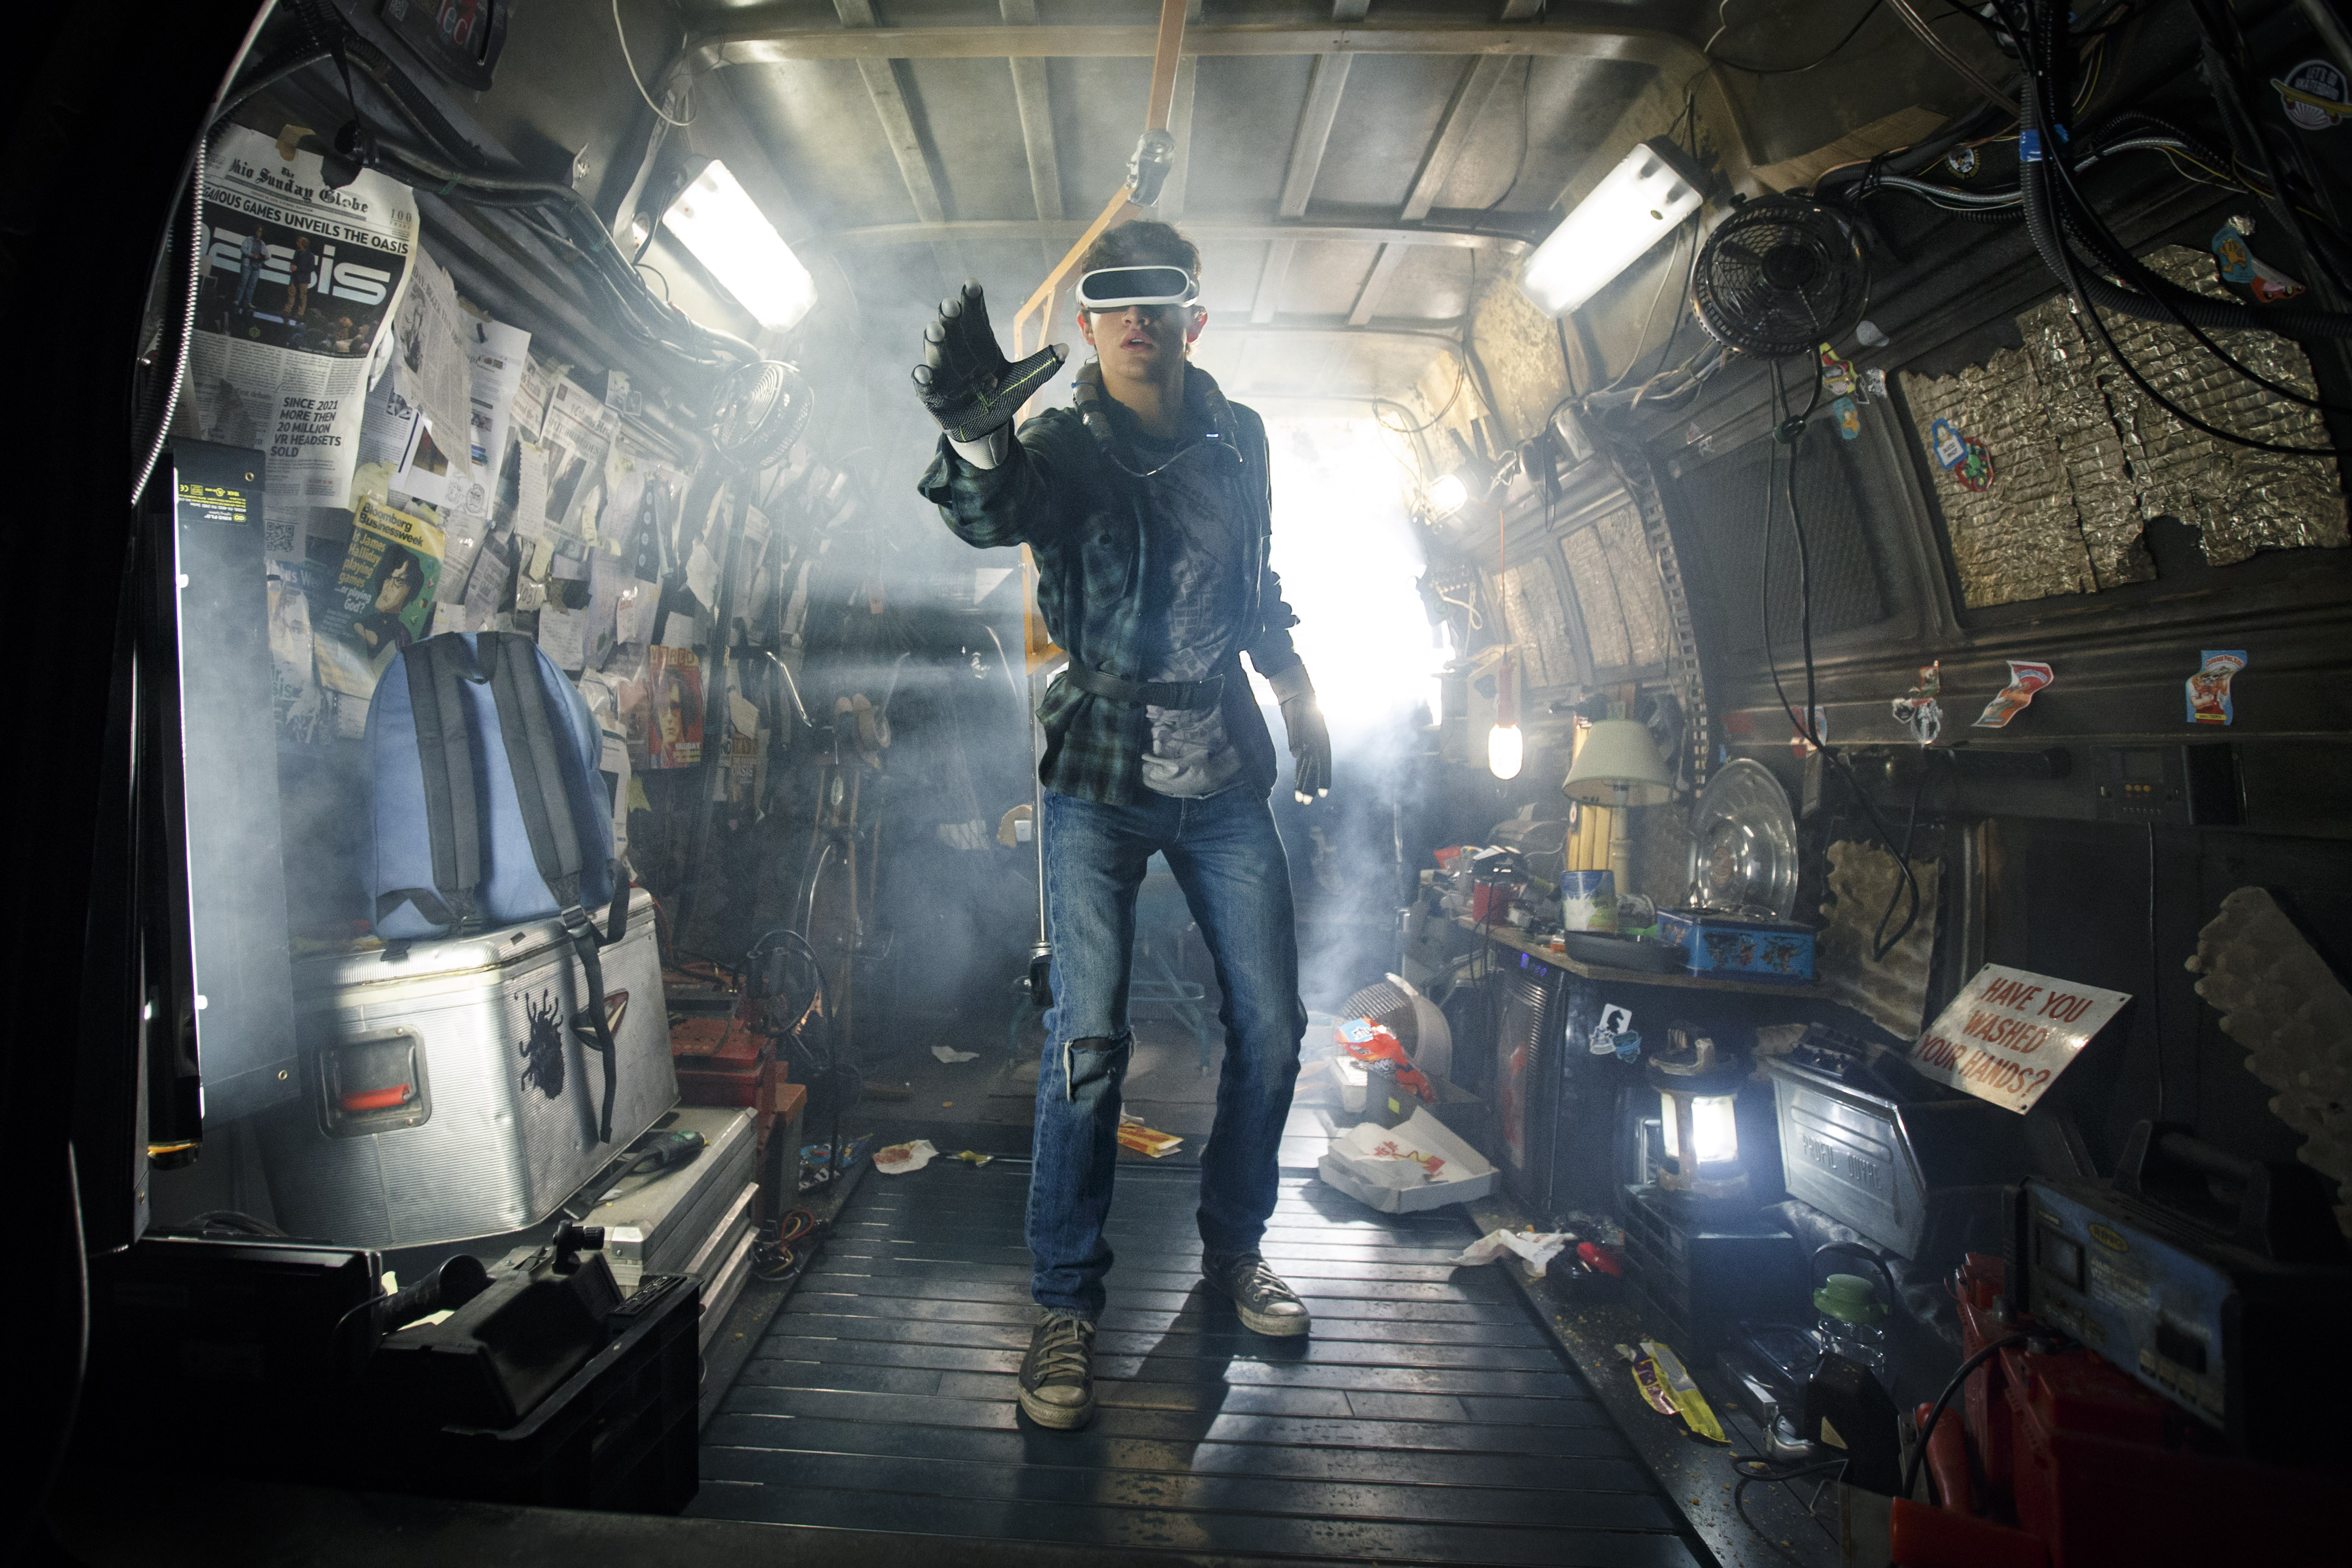 Spielberg virtuális valóságában nem élnénk, de két órára őrülten szórakoztató elmerülni benne